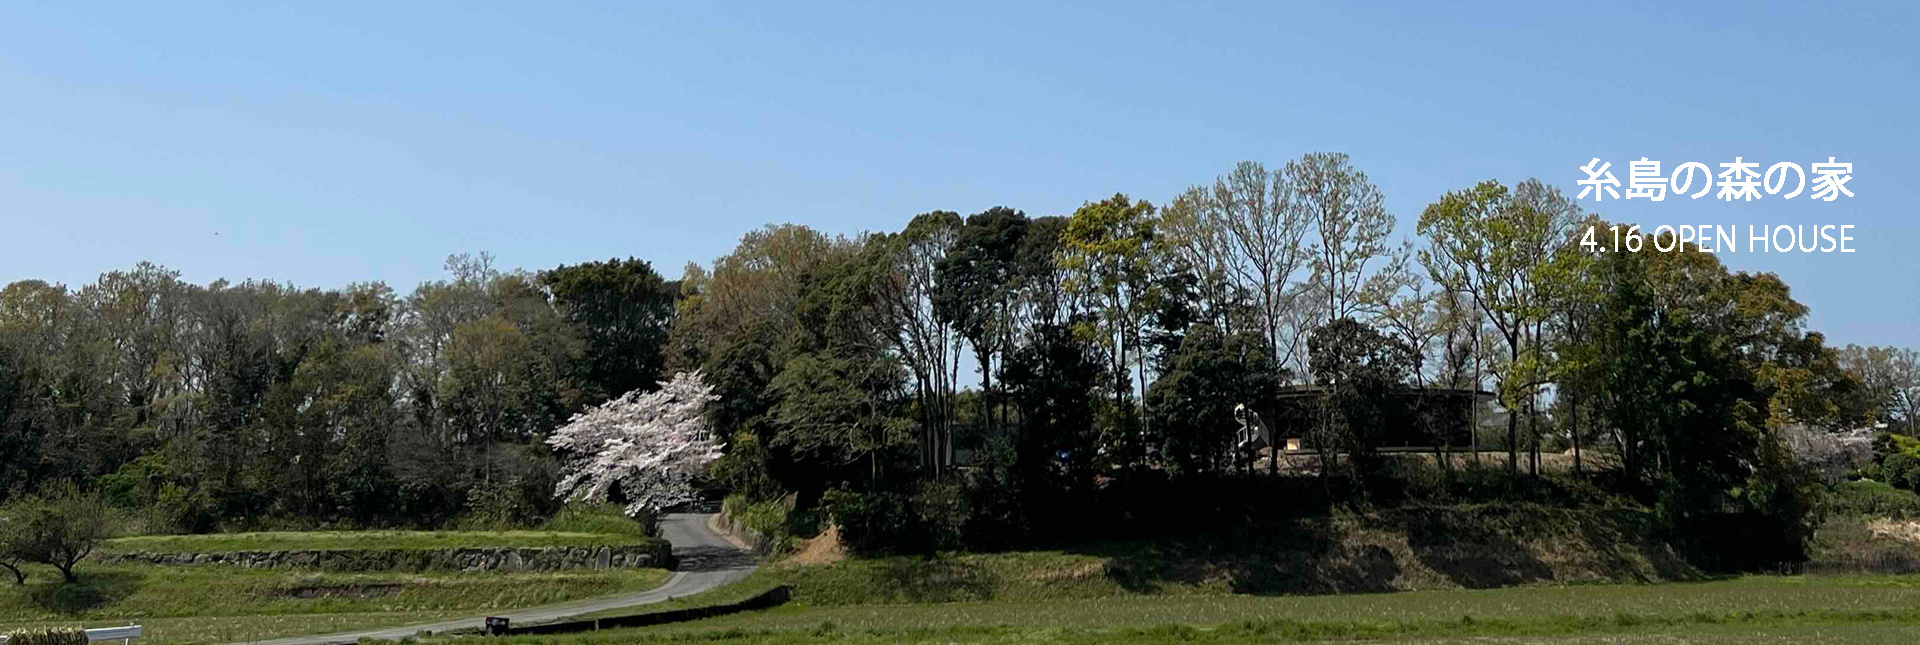 4月の由布の森「coyakichi」体験会& 糸島、奈良見学会のご案内です！_e0029115_12192576.jpg